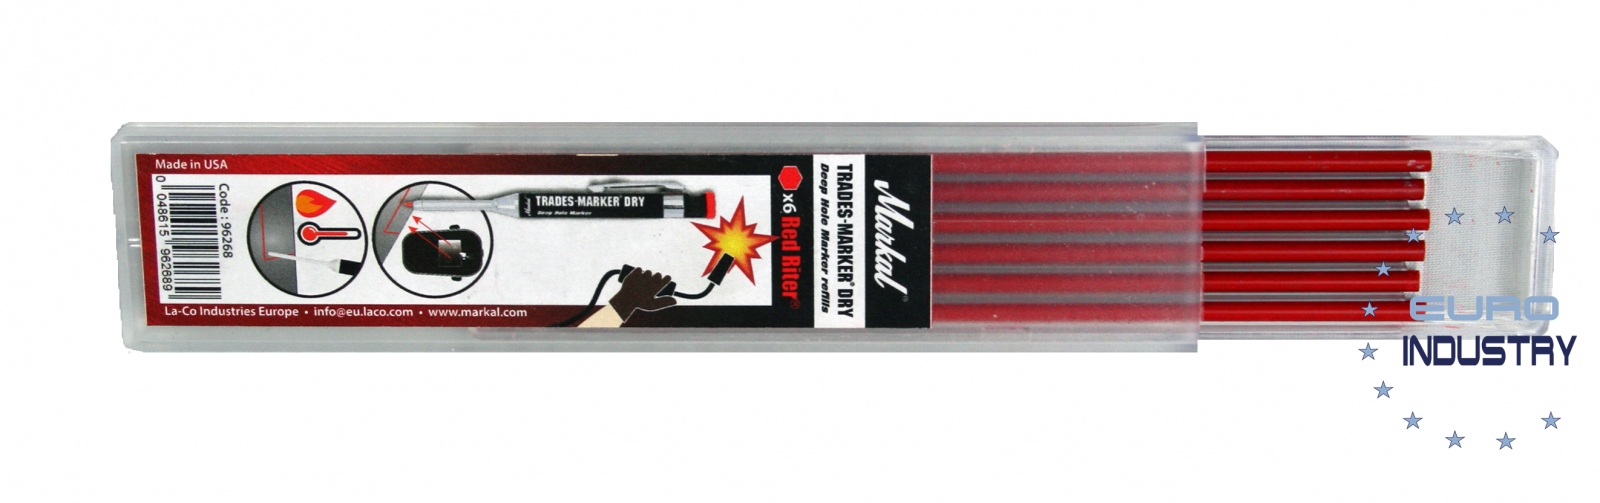 Markal Silver-Streak & Red-Riter Welders Pencil (Markal 96101)